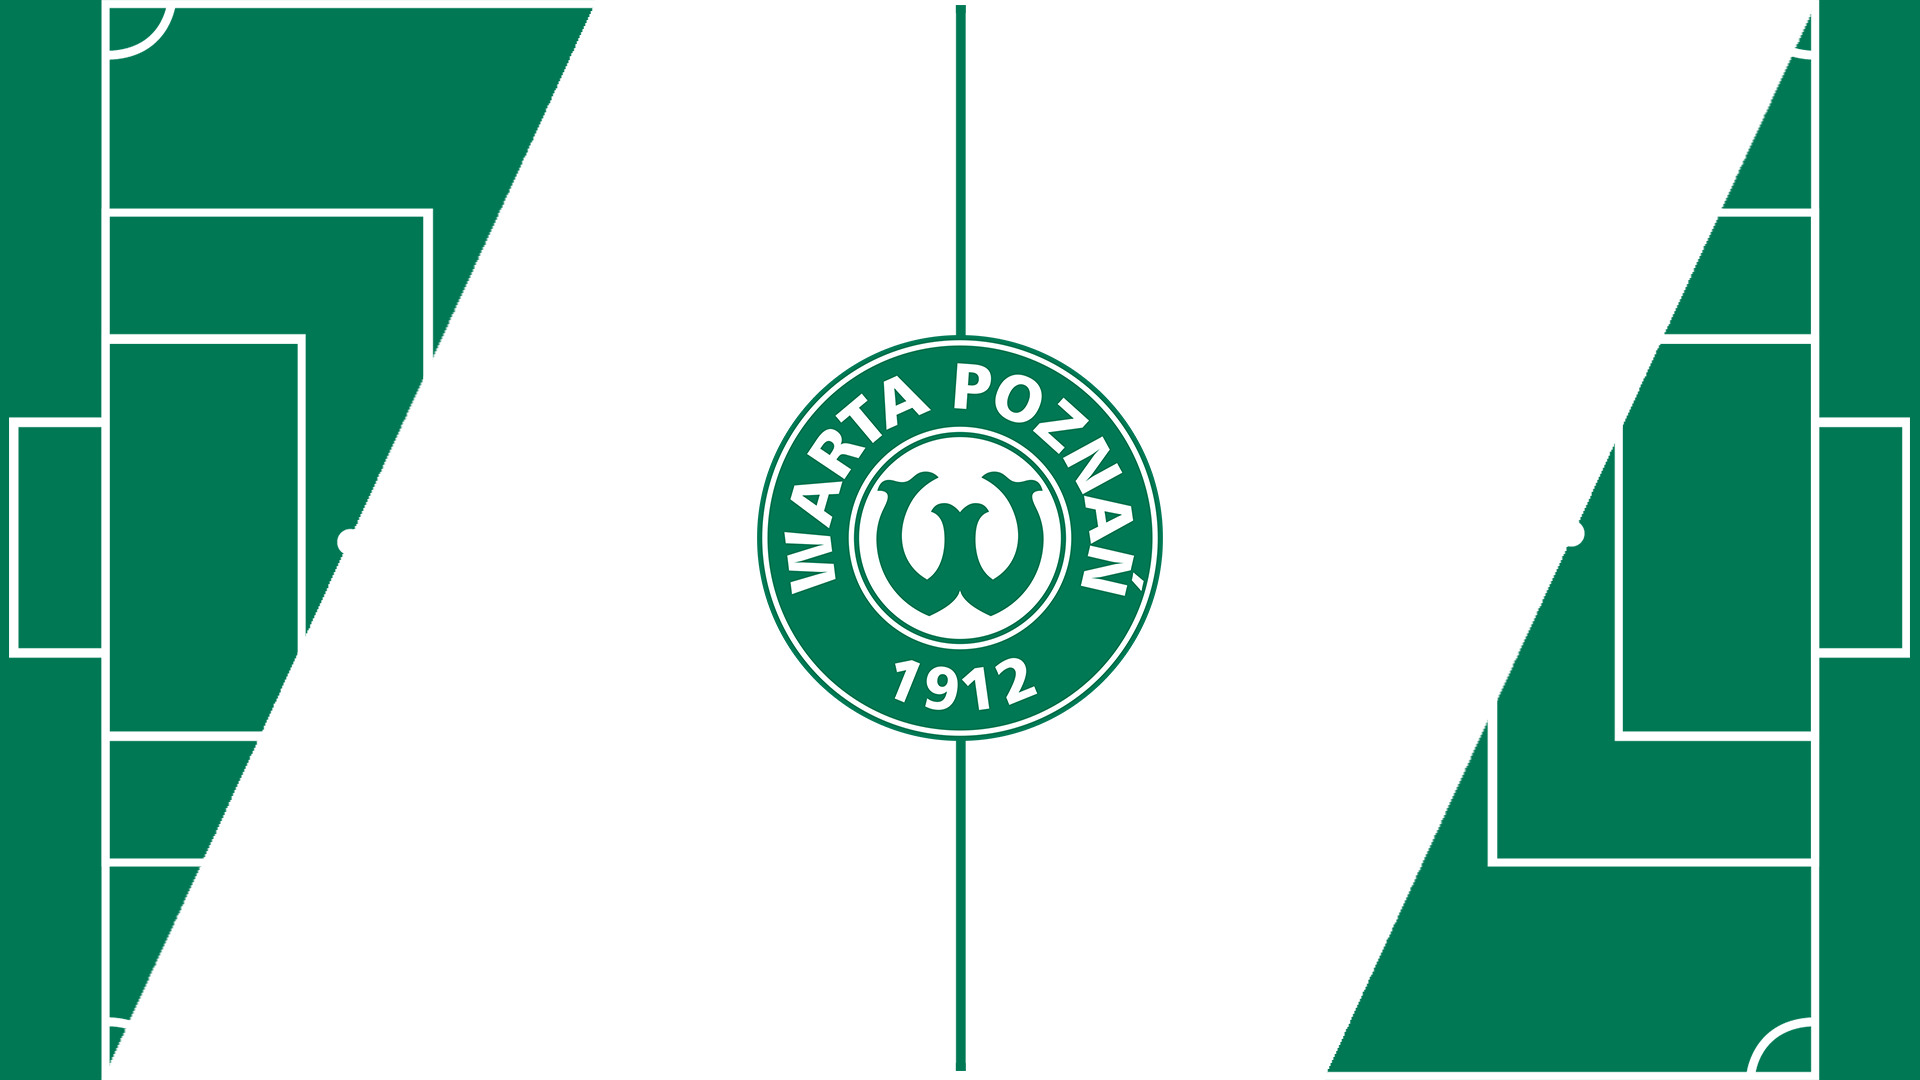 warta-poznan-12-football-club-facts